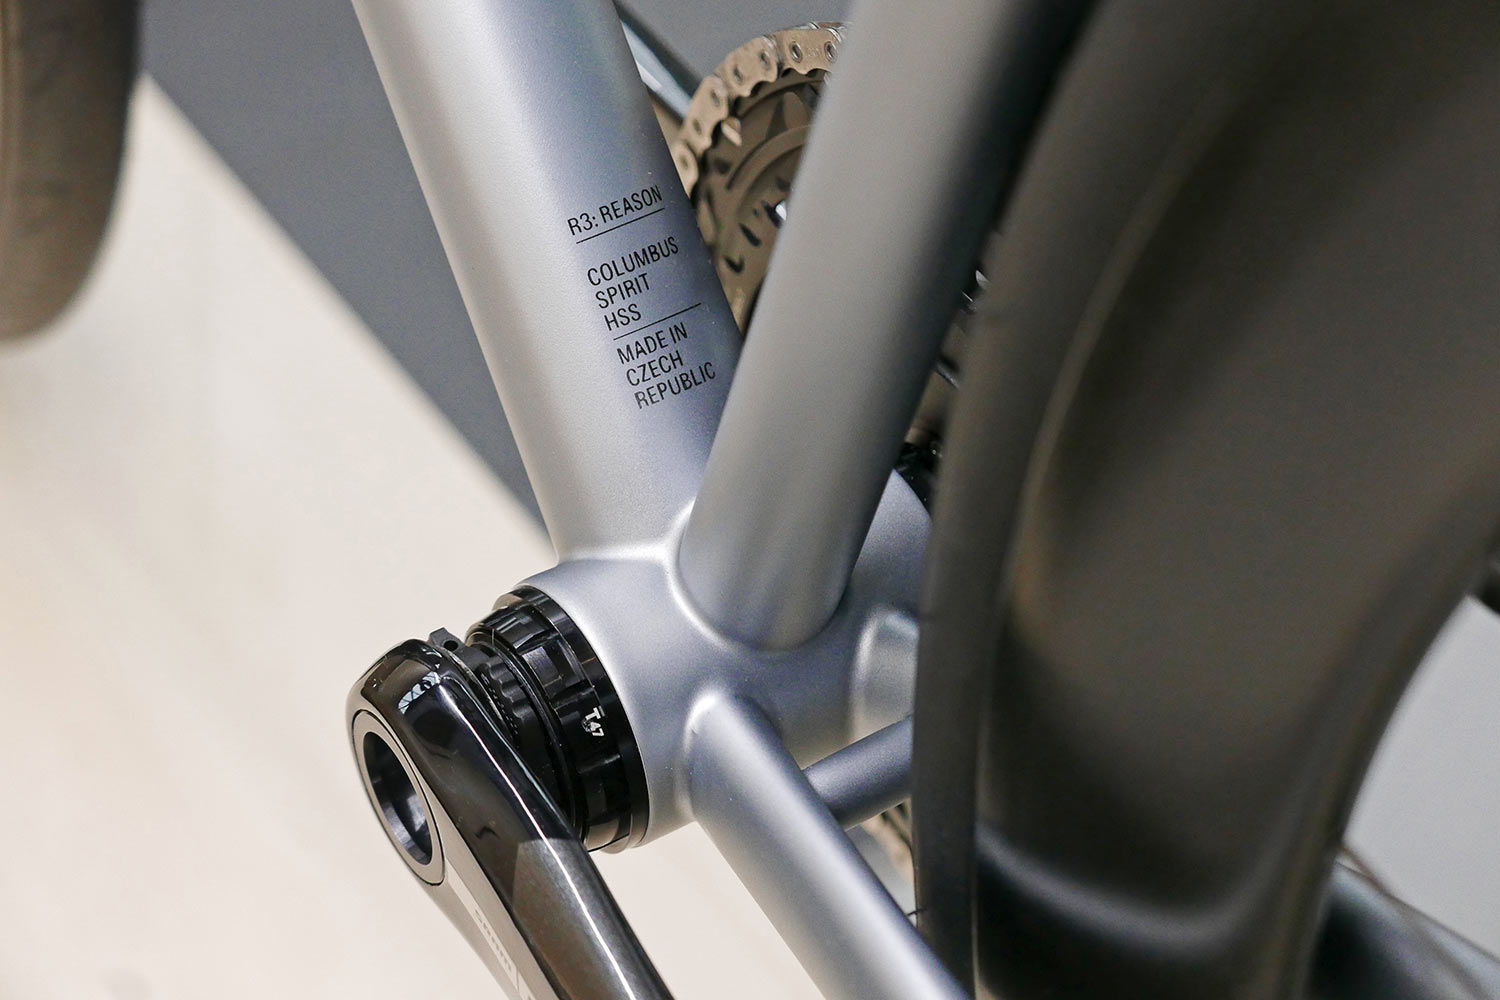 Repete R3 Reason fully integrated handmade modern steel road bike, T47 BB bottom bracket